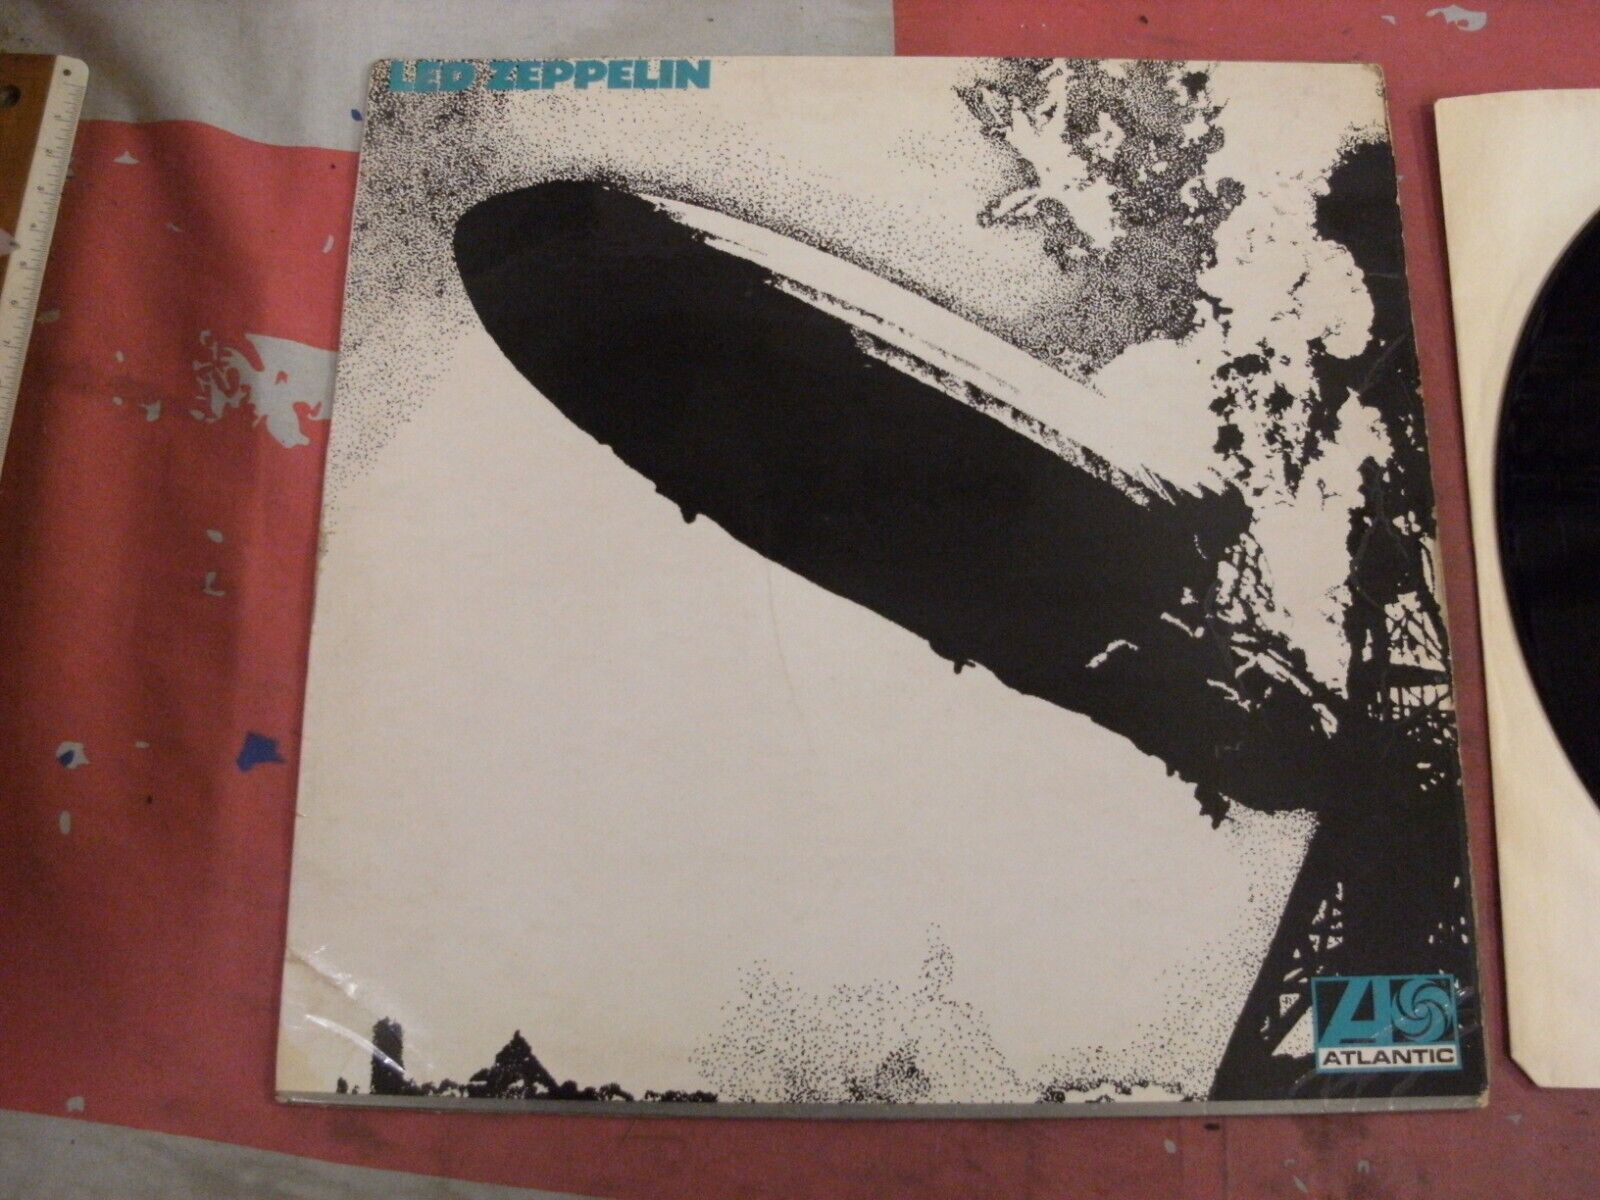 Pic 1 LEDE ZEPPELIN "1" 1969 UK ORIG 1st PRESS "TURQUOISE" SLEEVE VINYL NEAR MINT RARE